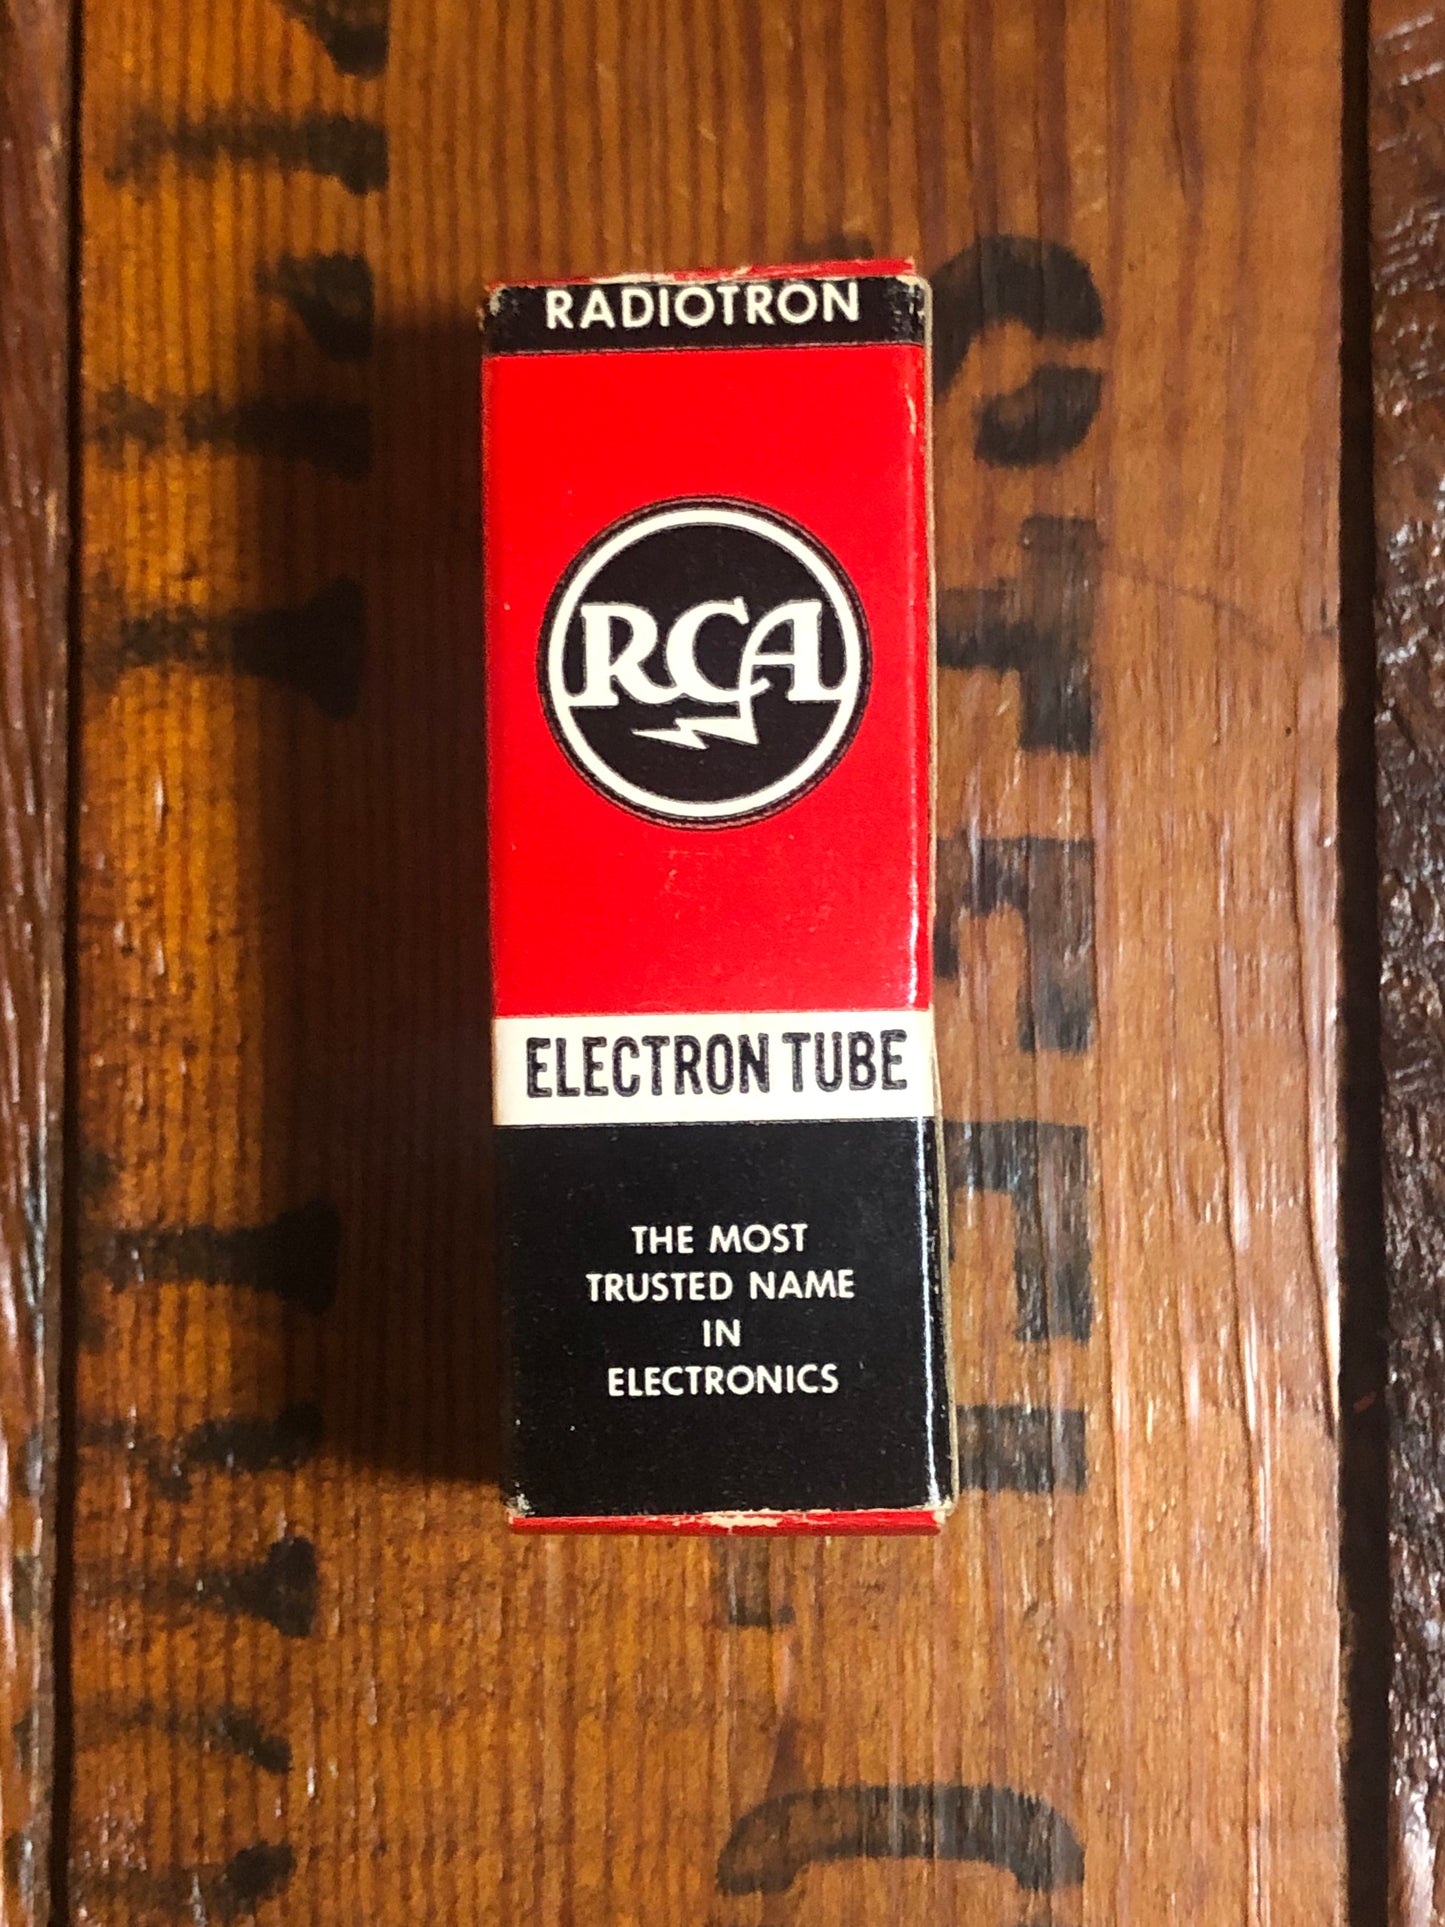 N.O.S. Vintage RCA 12AX7A Preamp Tube ECC83 Valve 12AX7 w/ Original Box